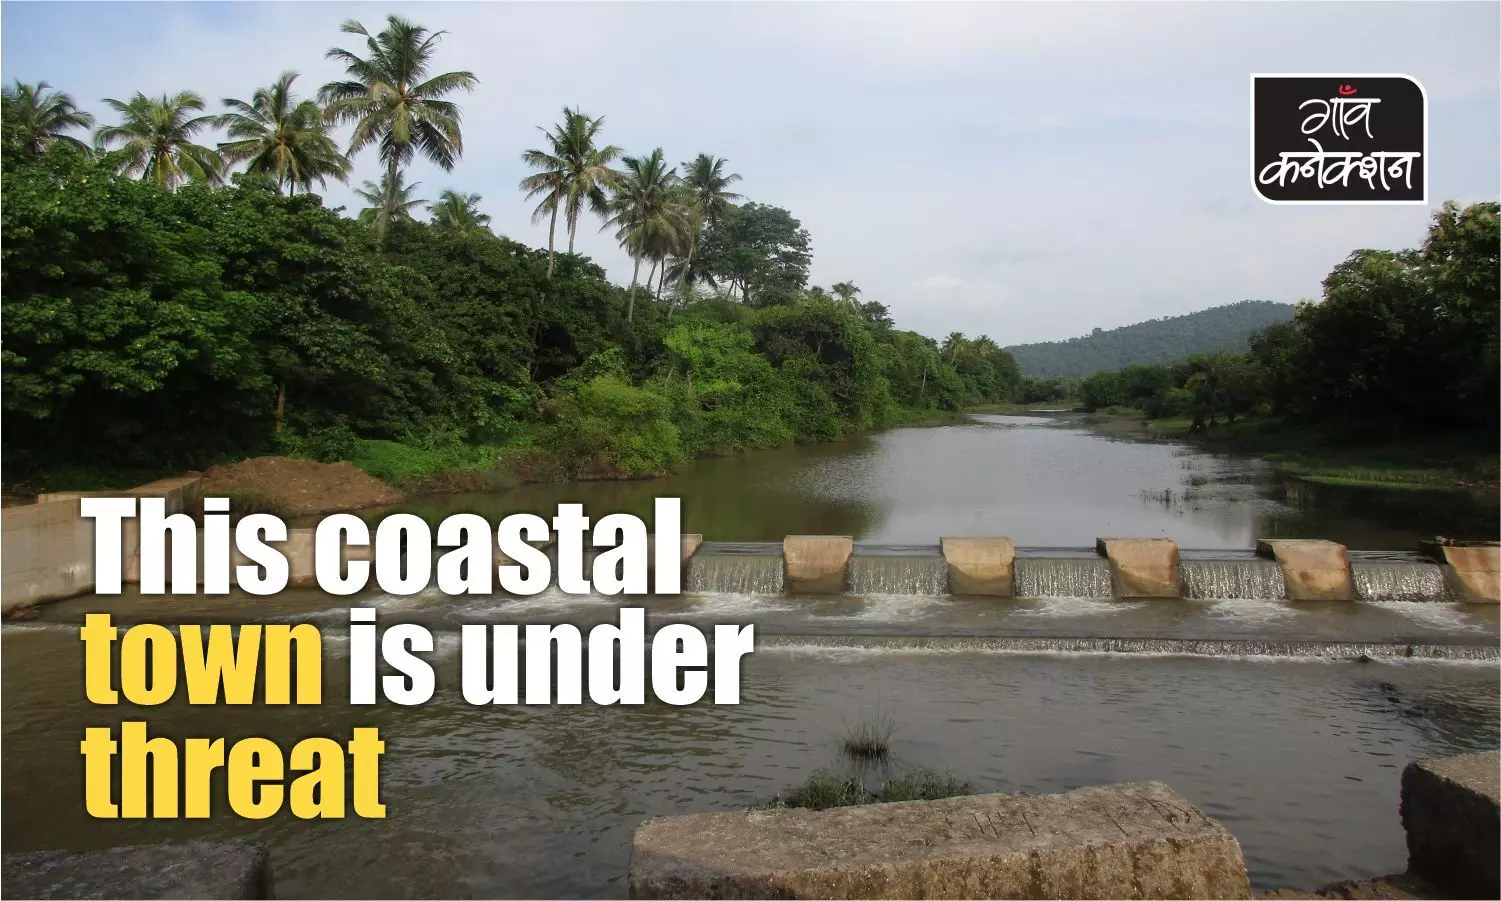 Dahanu, an ecologically fragile coastal area near Mumbai, under siege